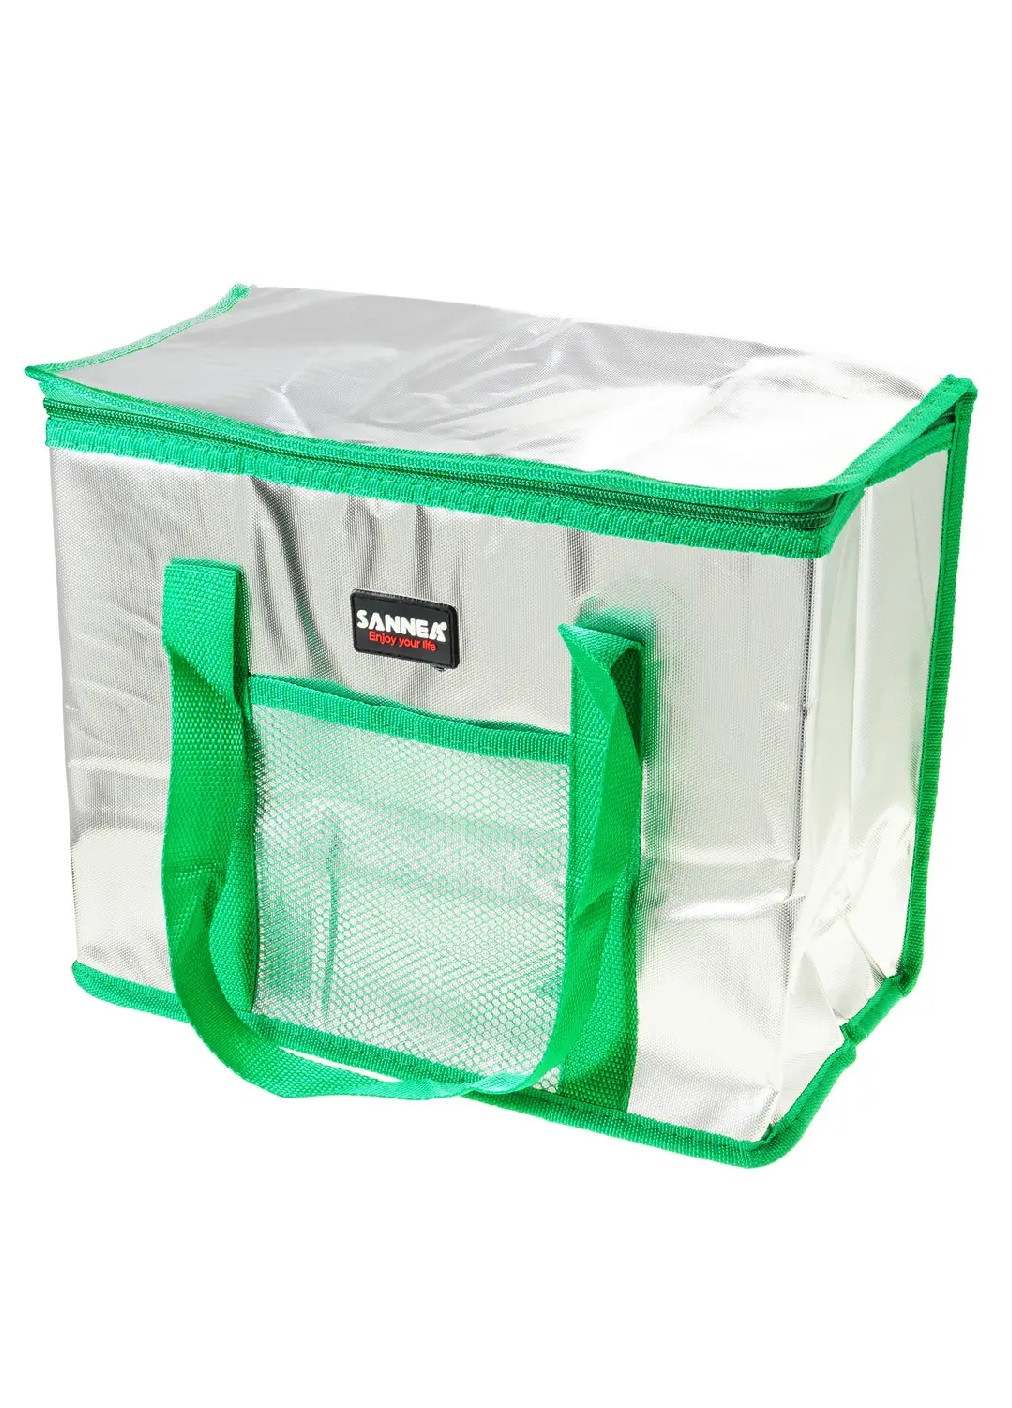 Термосумка сумка холодильник изотермическая термоизоляция для похода пикника плжа дачи на 16 л 33х17х28 см (474452-Prob) Зеленая Unbranded (258486596)